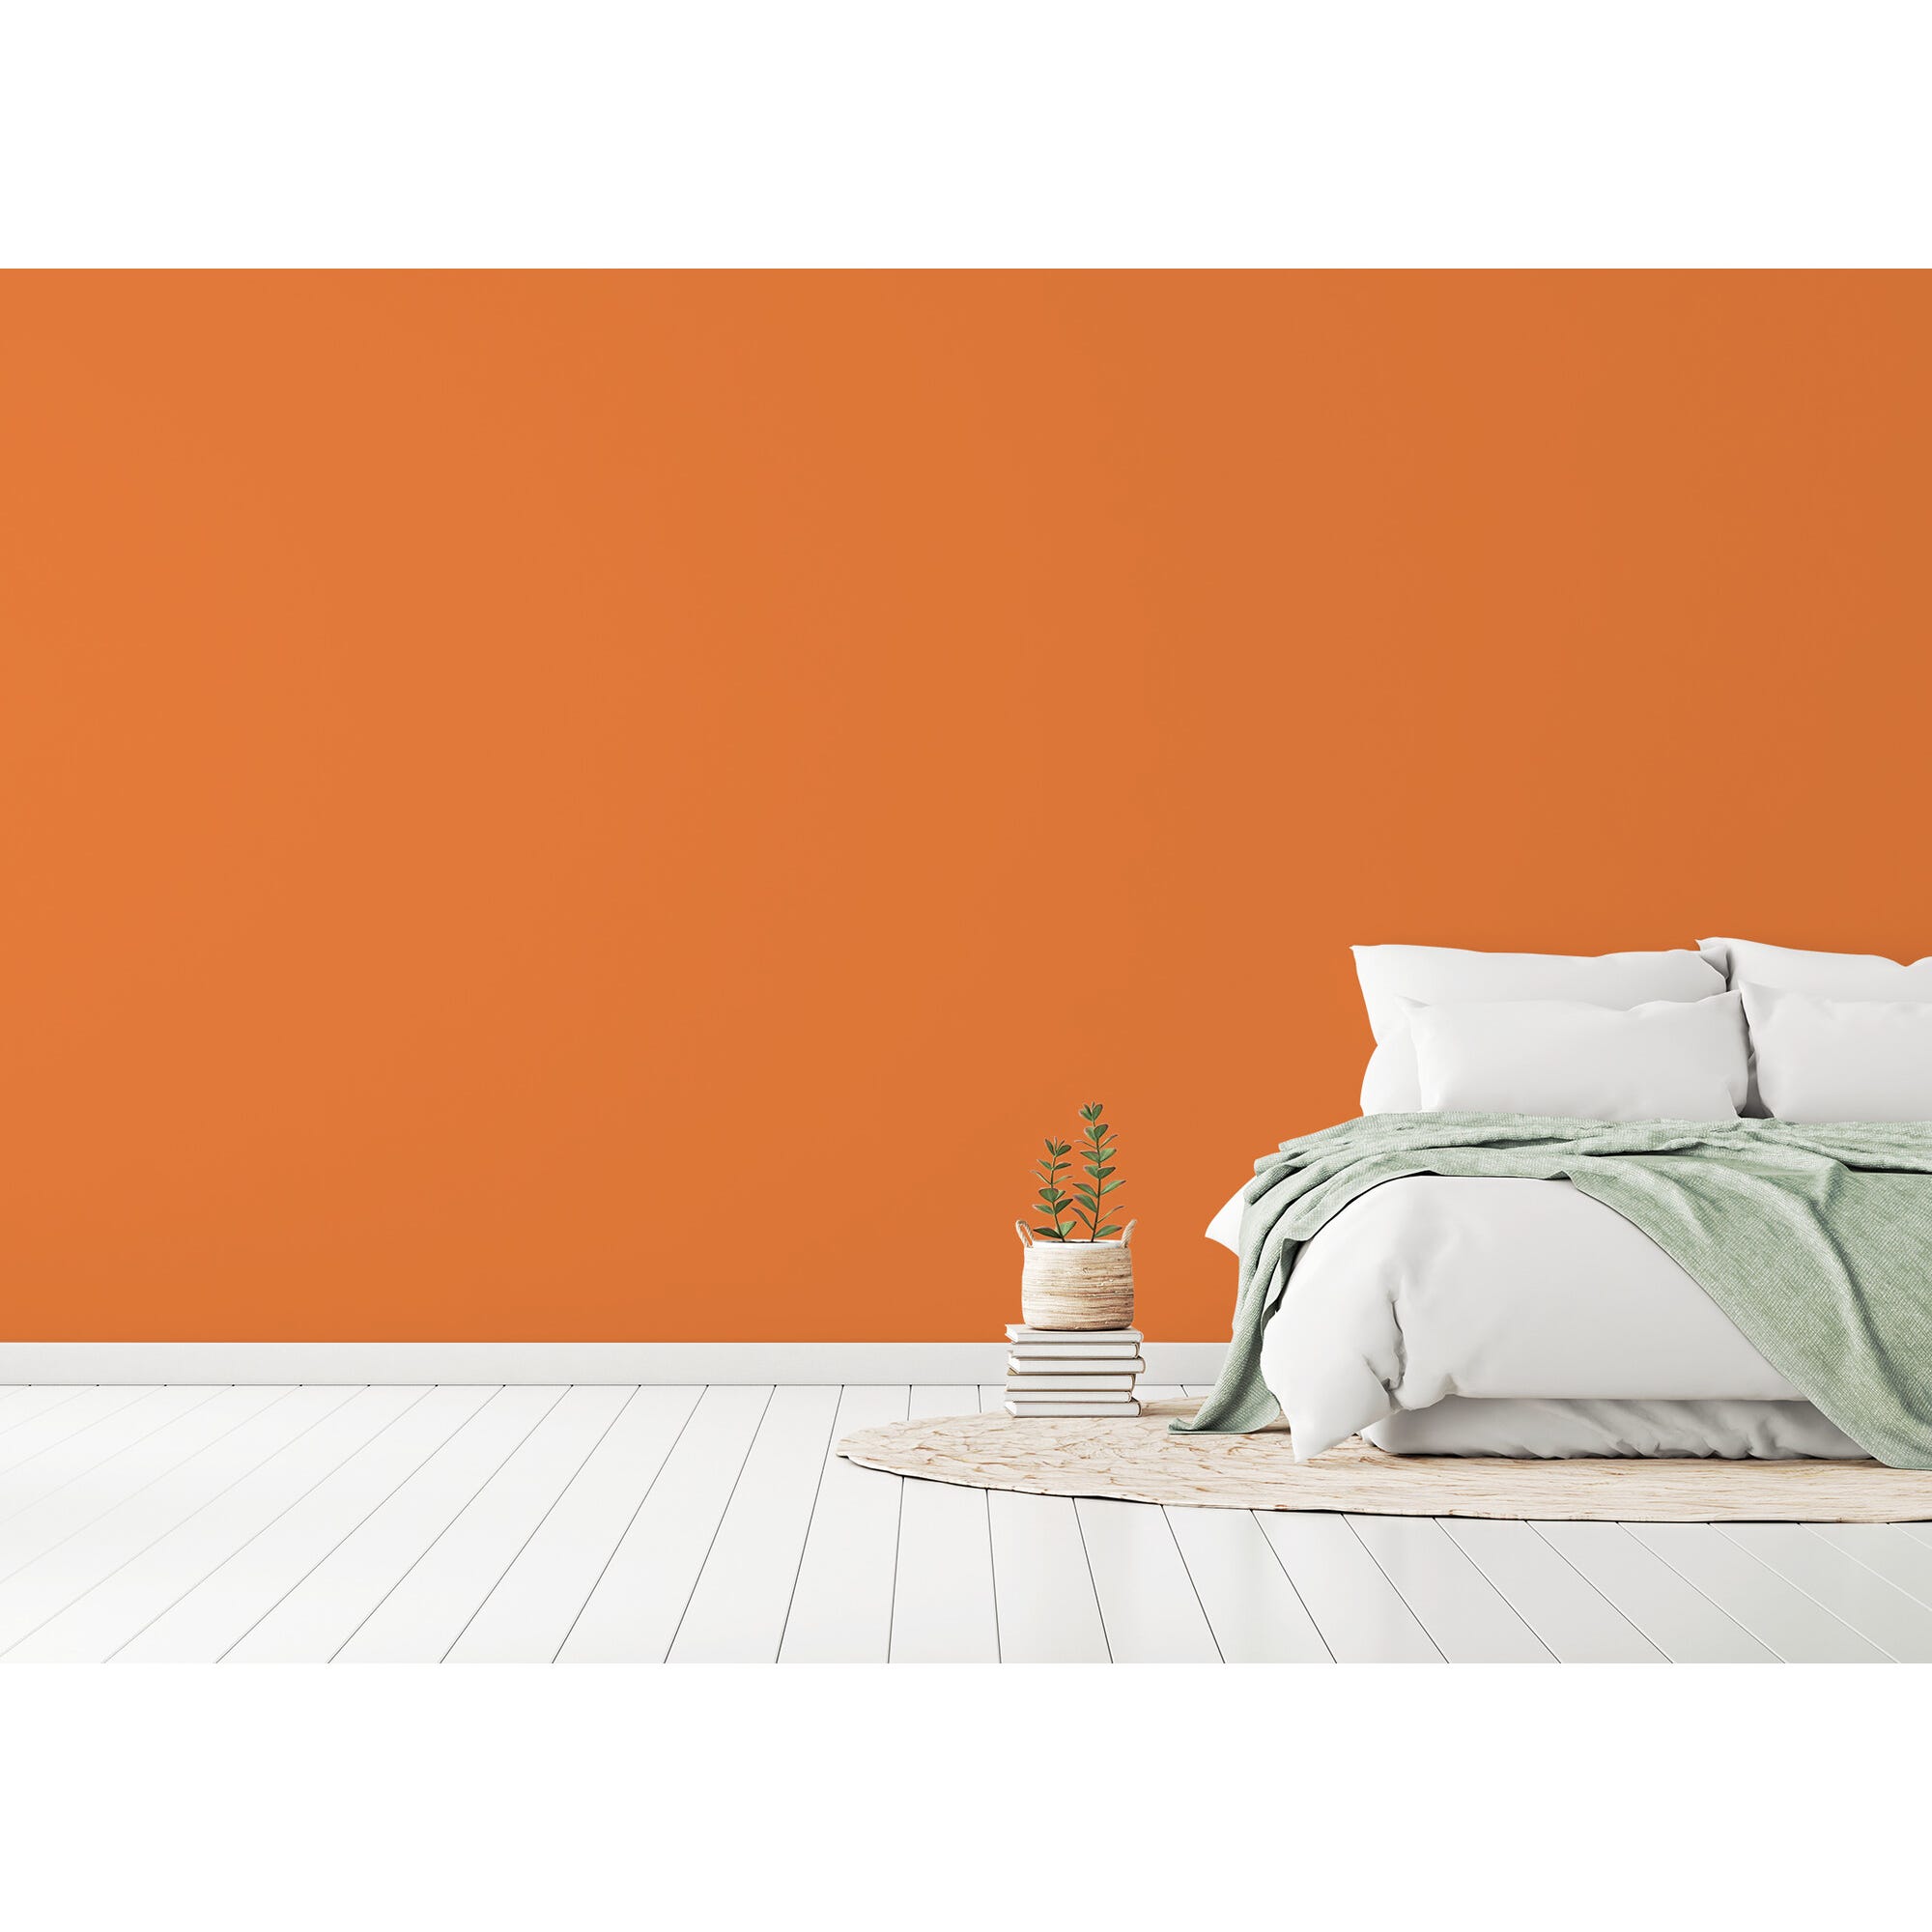 Peinture intérieure velours orange fanfare teintée en machine 10 L Altea - GAUTHIER 5